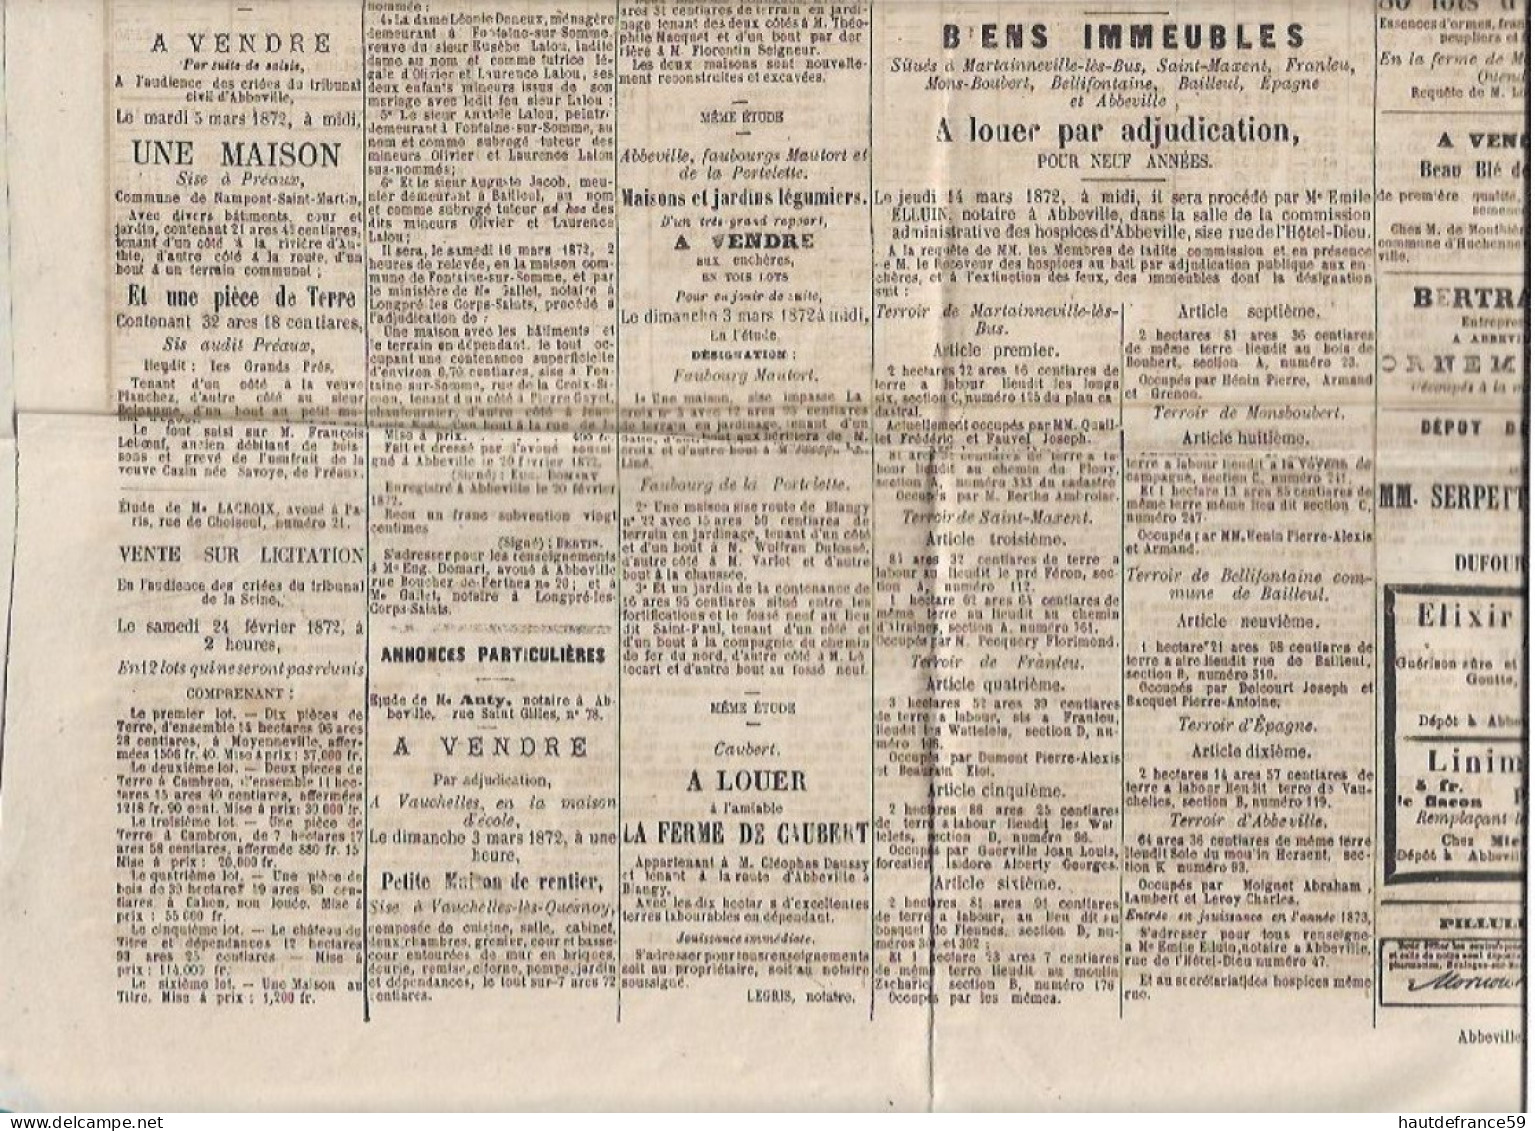 L ABBEVILLOIS Journal Politique Commercial Agricole Littéraire De L Arrondissement D ABBEVILE Février 1972 Guerre Grévy - 1800 - 1849